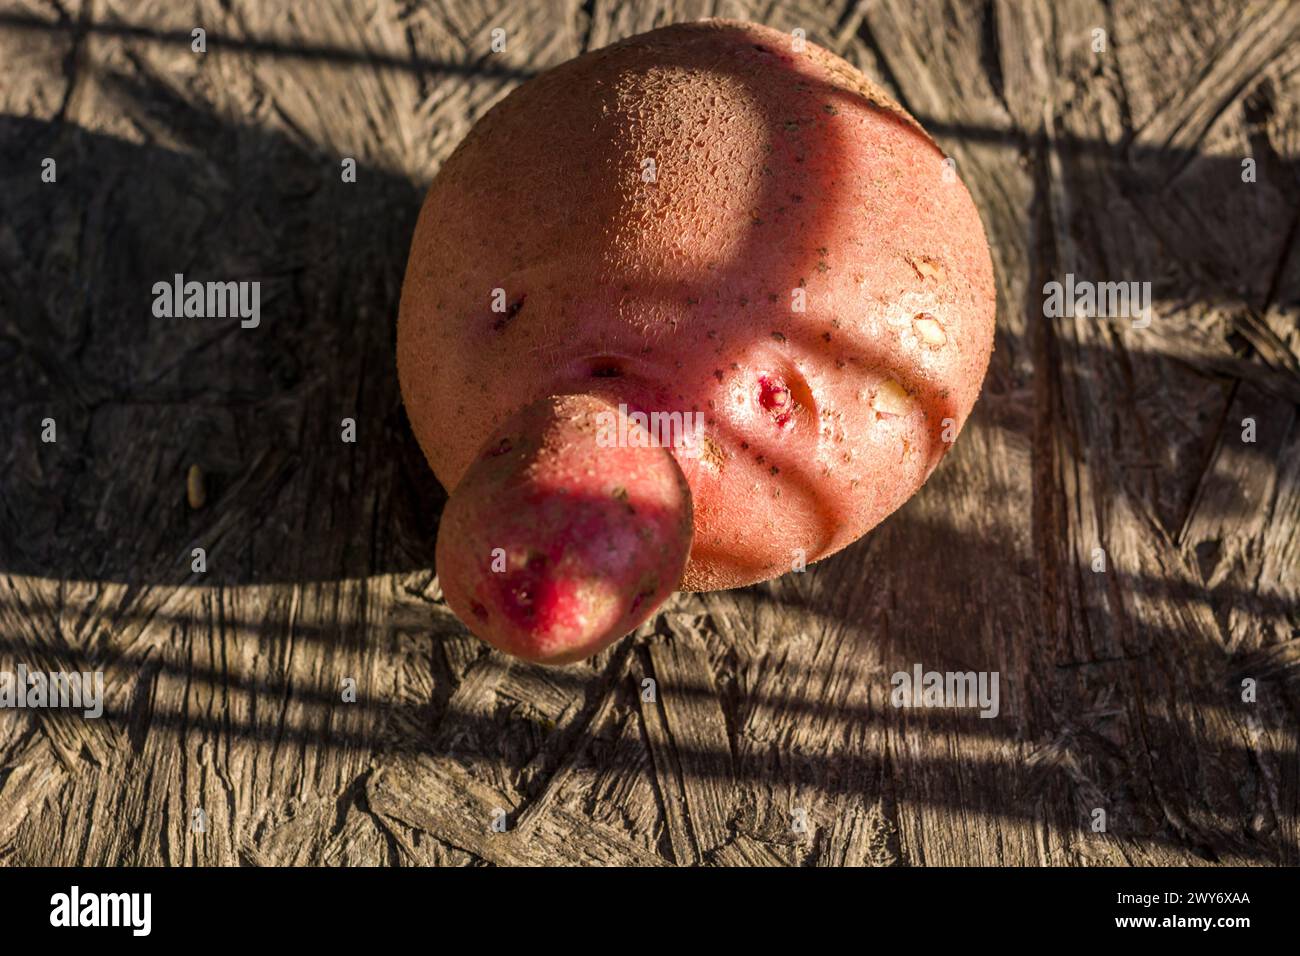 Fruit de pomme de terre en forme de visage Banque D'Images